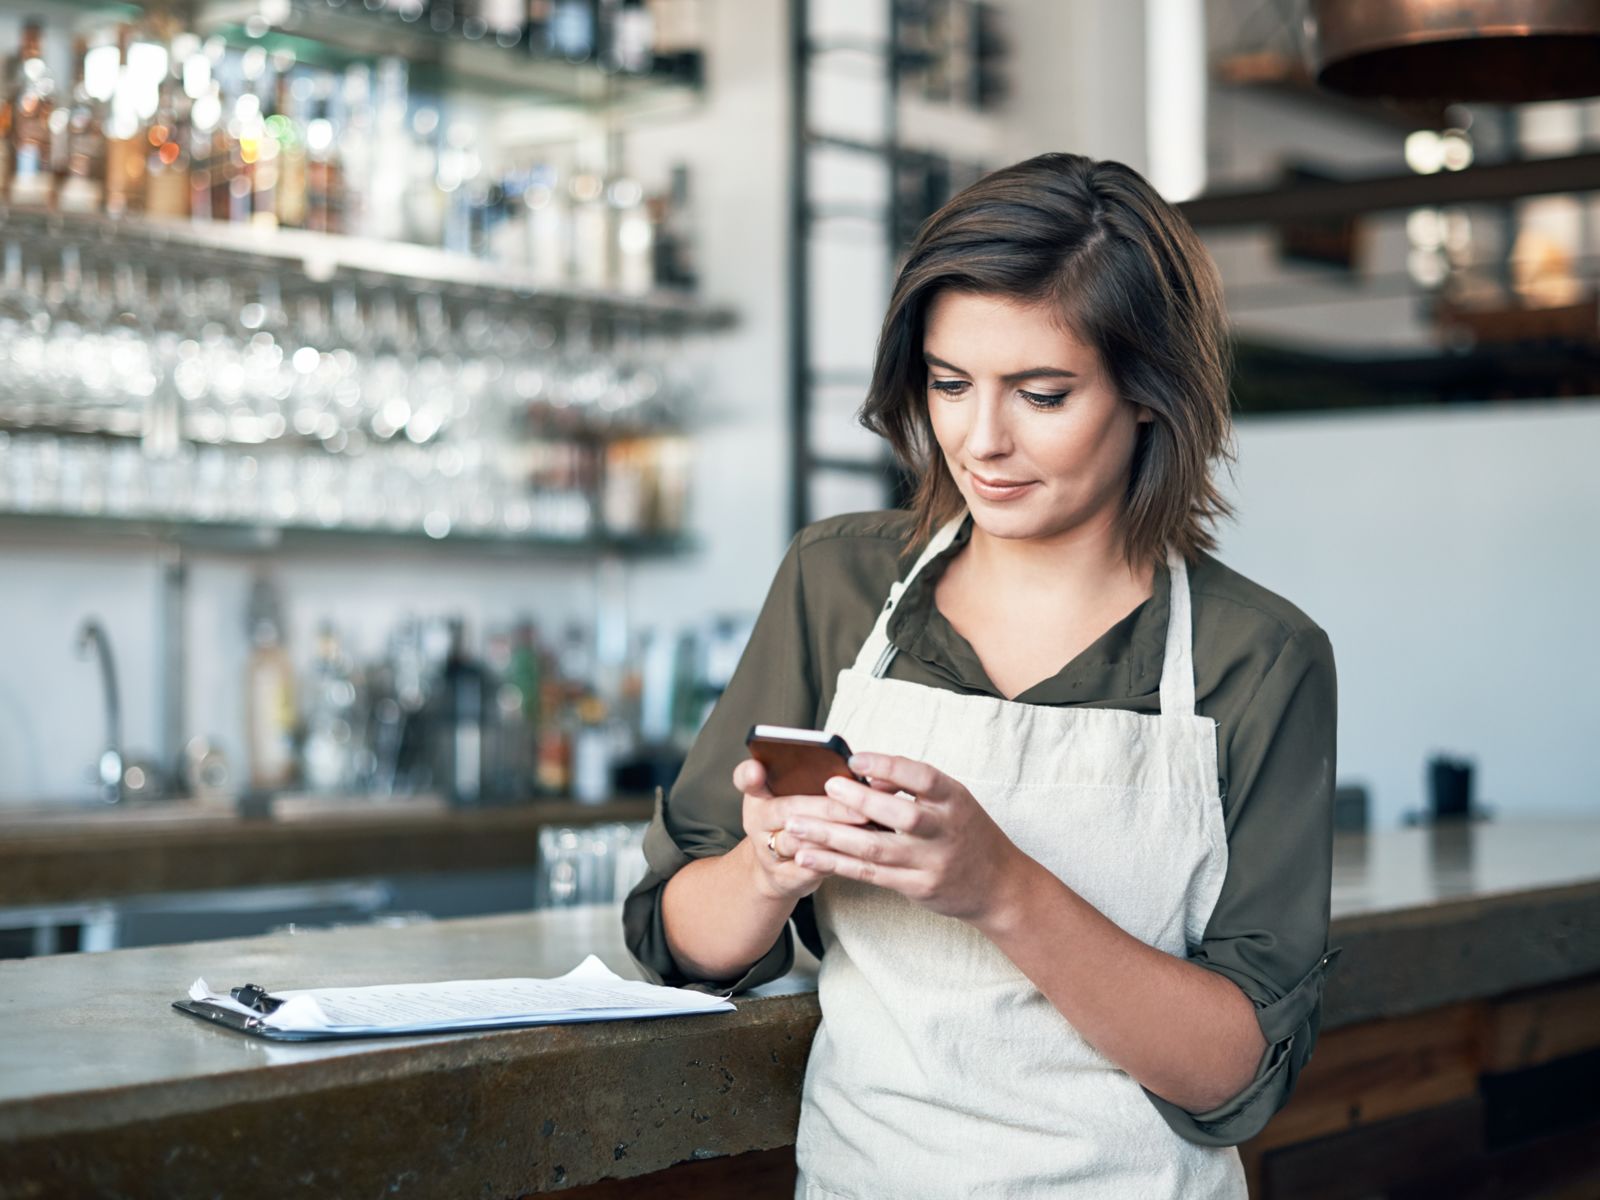 Eine Frau mit weisser Schürze steht vor einer Bar und schaut aufs Handy.